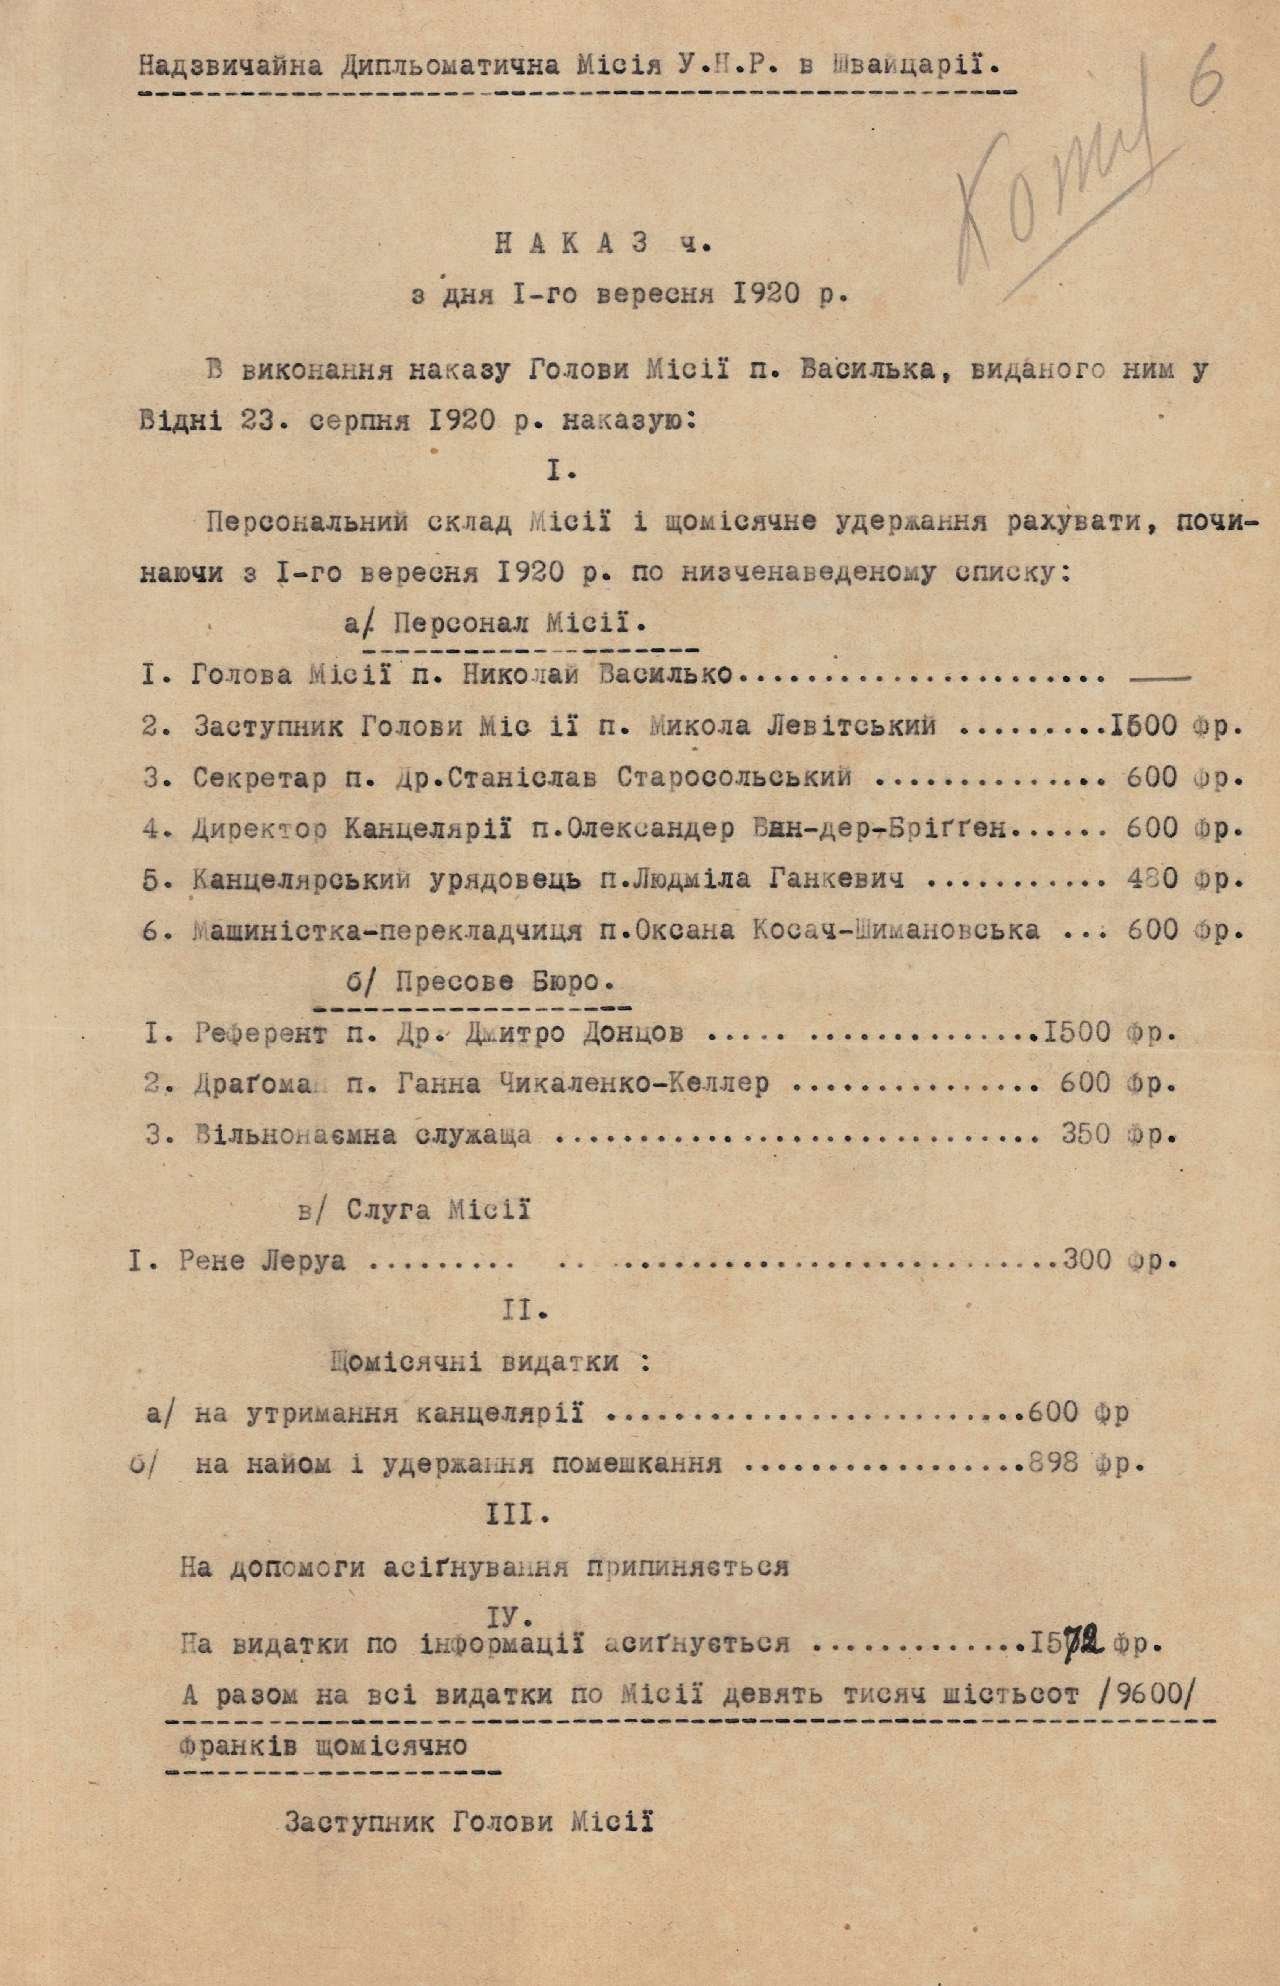 Наказ Надзвичайної дипломатичної місії Української Народної Республіки в Швейцарії про персональний склад місії. 01 вересня 1920 р.